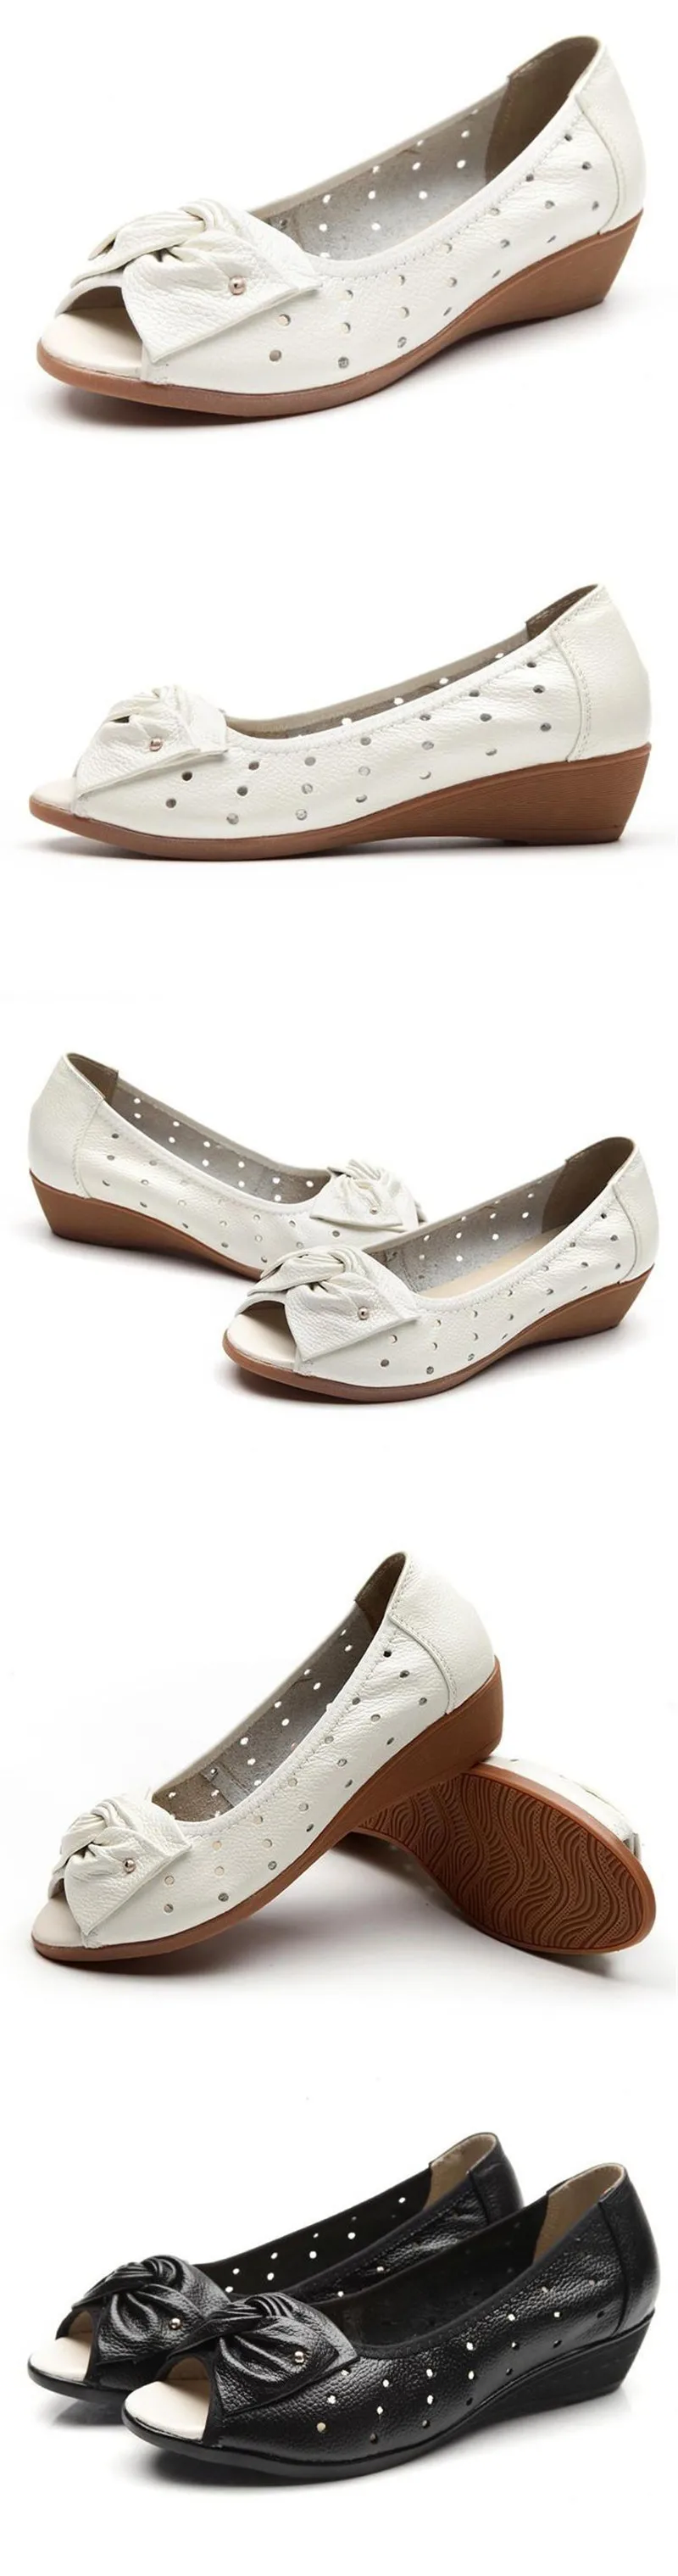 YAERNI/Новая женская обувь; босоножки из натуральной кожи на танкетке; женские сандалии на платформе с открытым носком; женские лоферы; chaussure femme